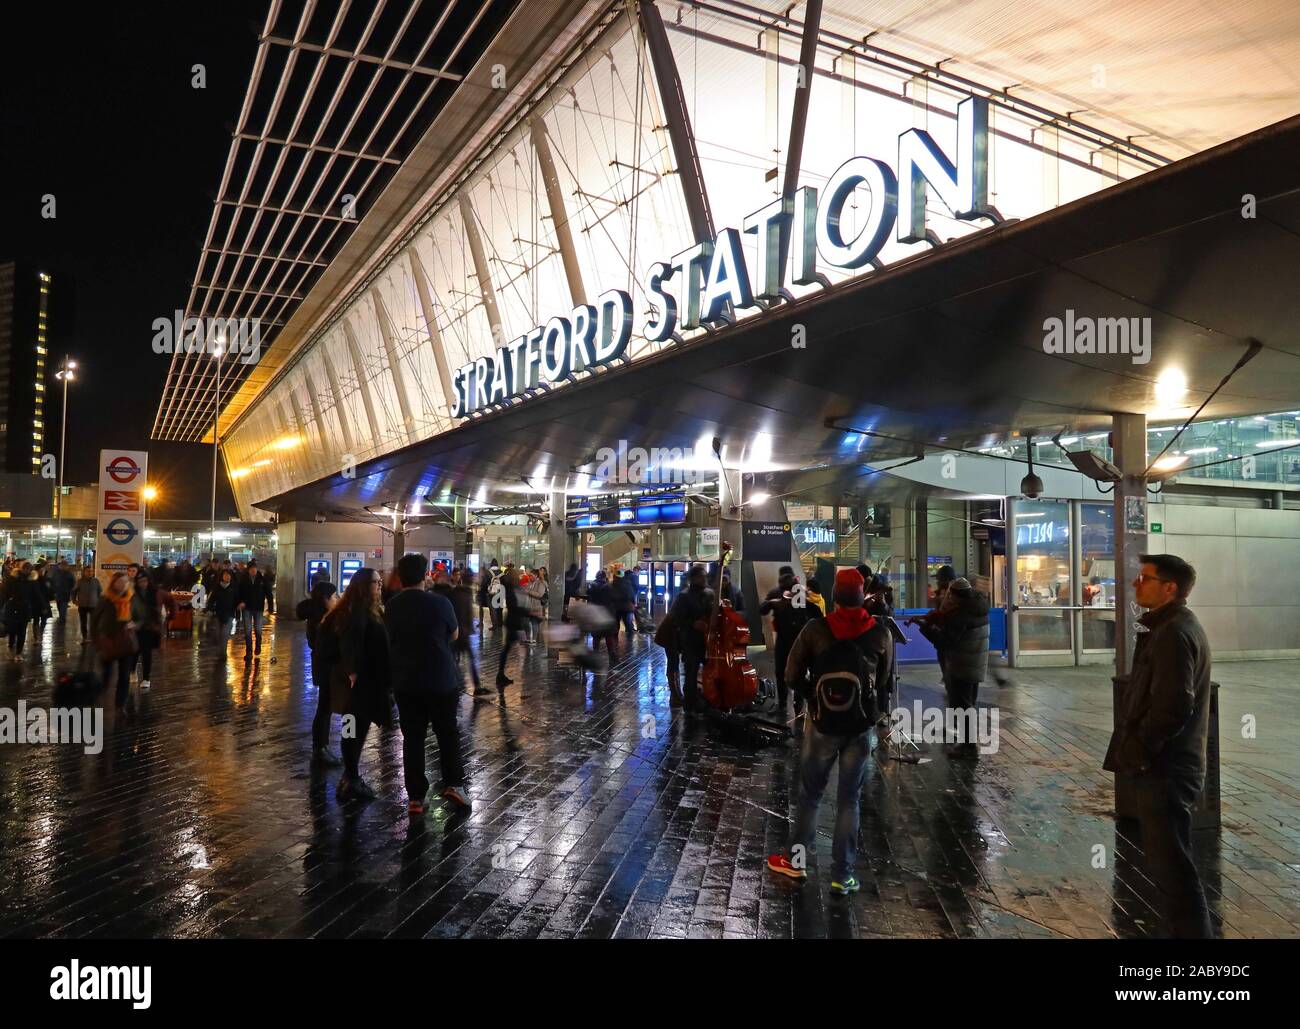 Stratford Regional and Stratford International station,Stratford City,Olympic Park, Montfichet Rd, London, England, UK, E20 1EJ Stock Photo